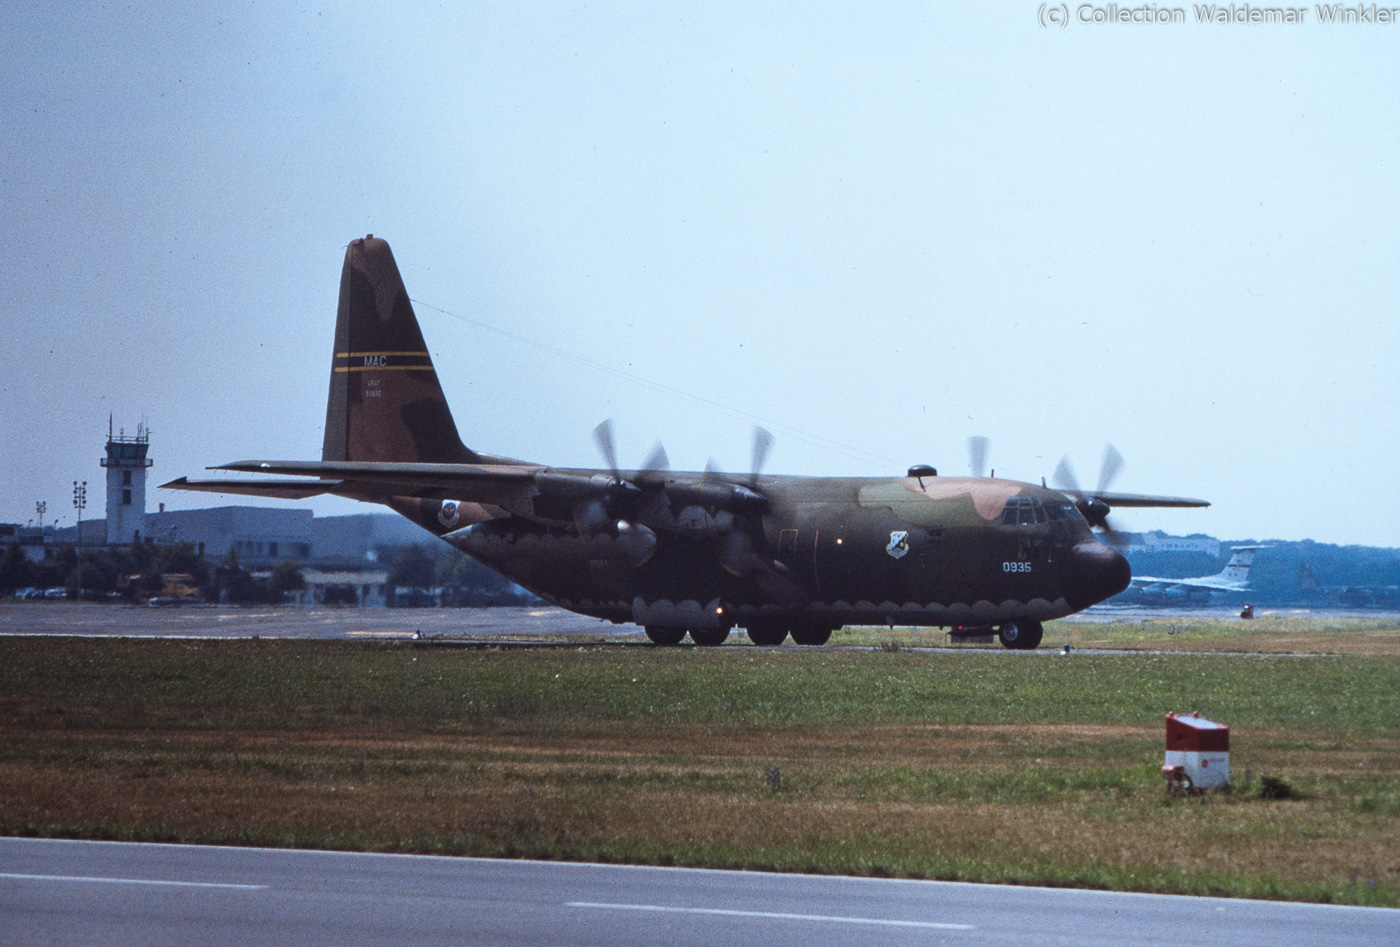 C-130_Hercules_DSC_3500.jpg